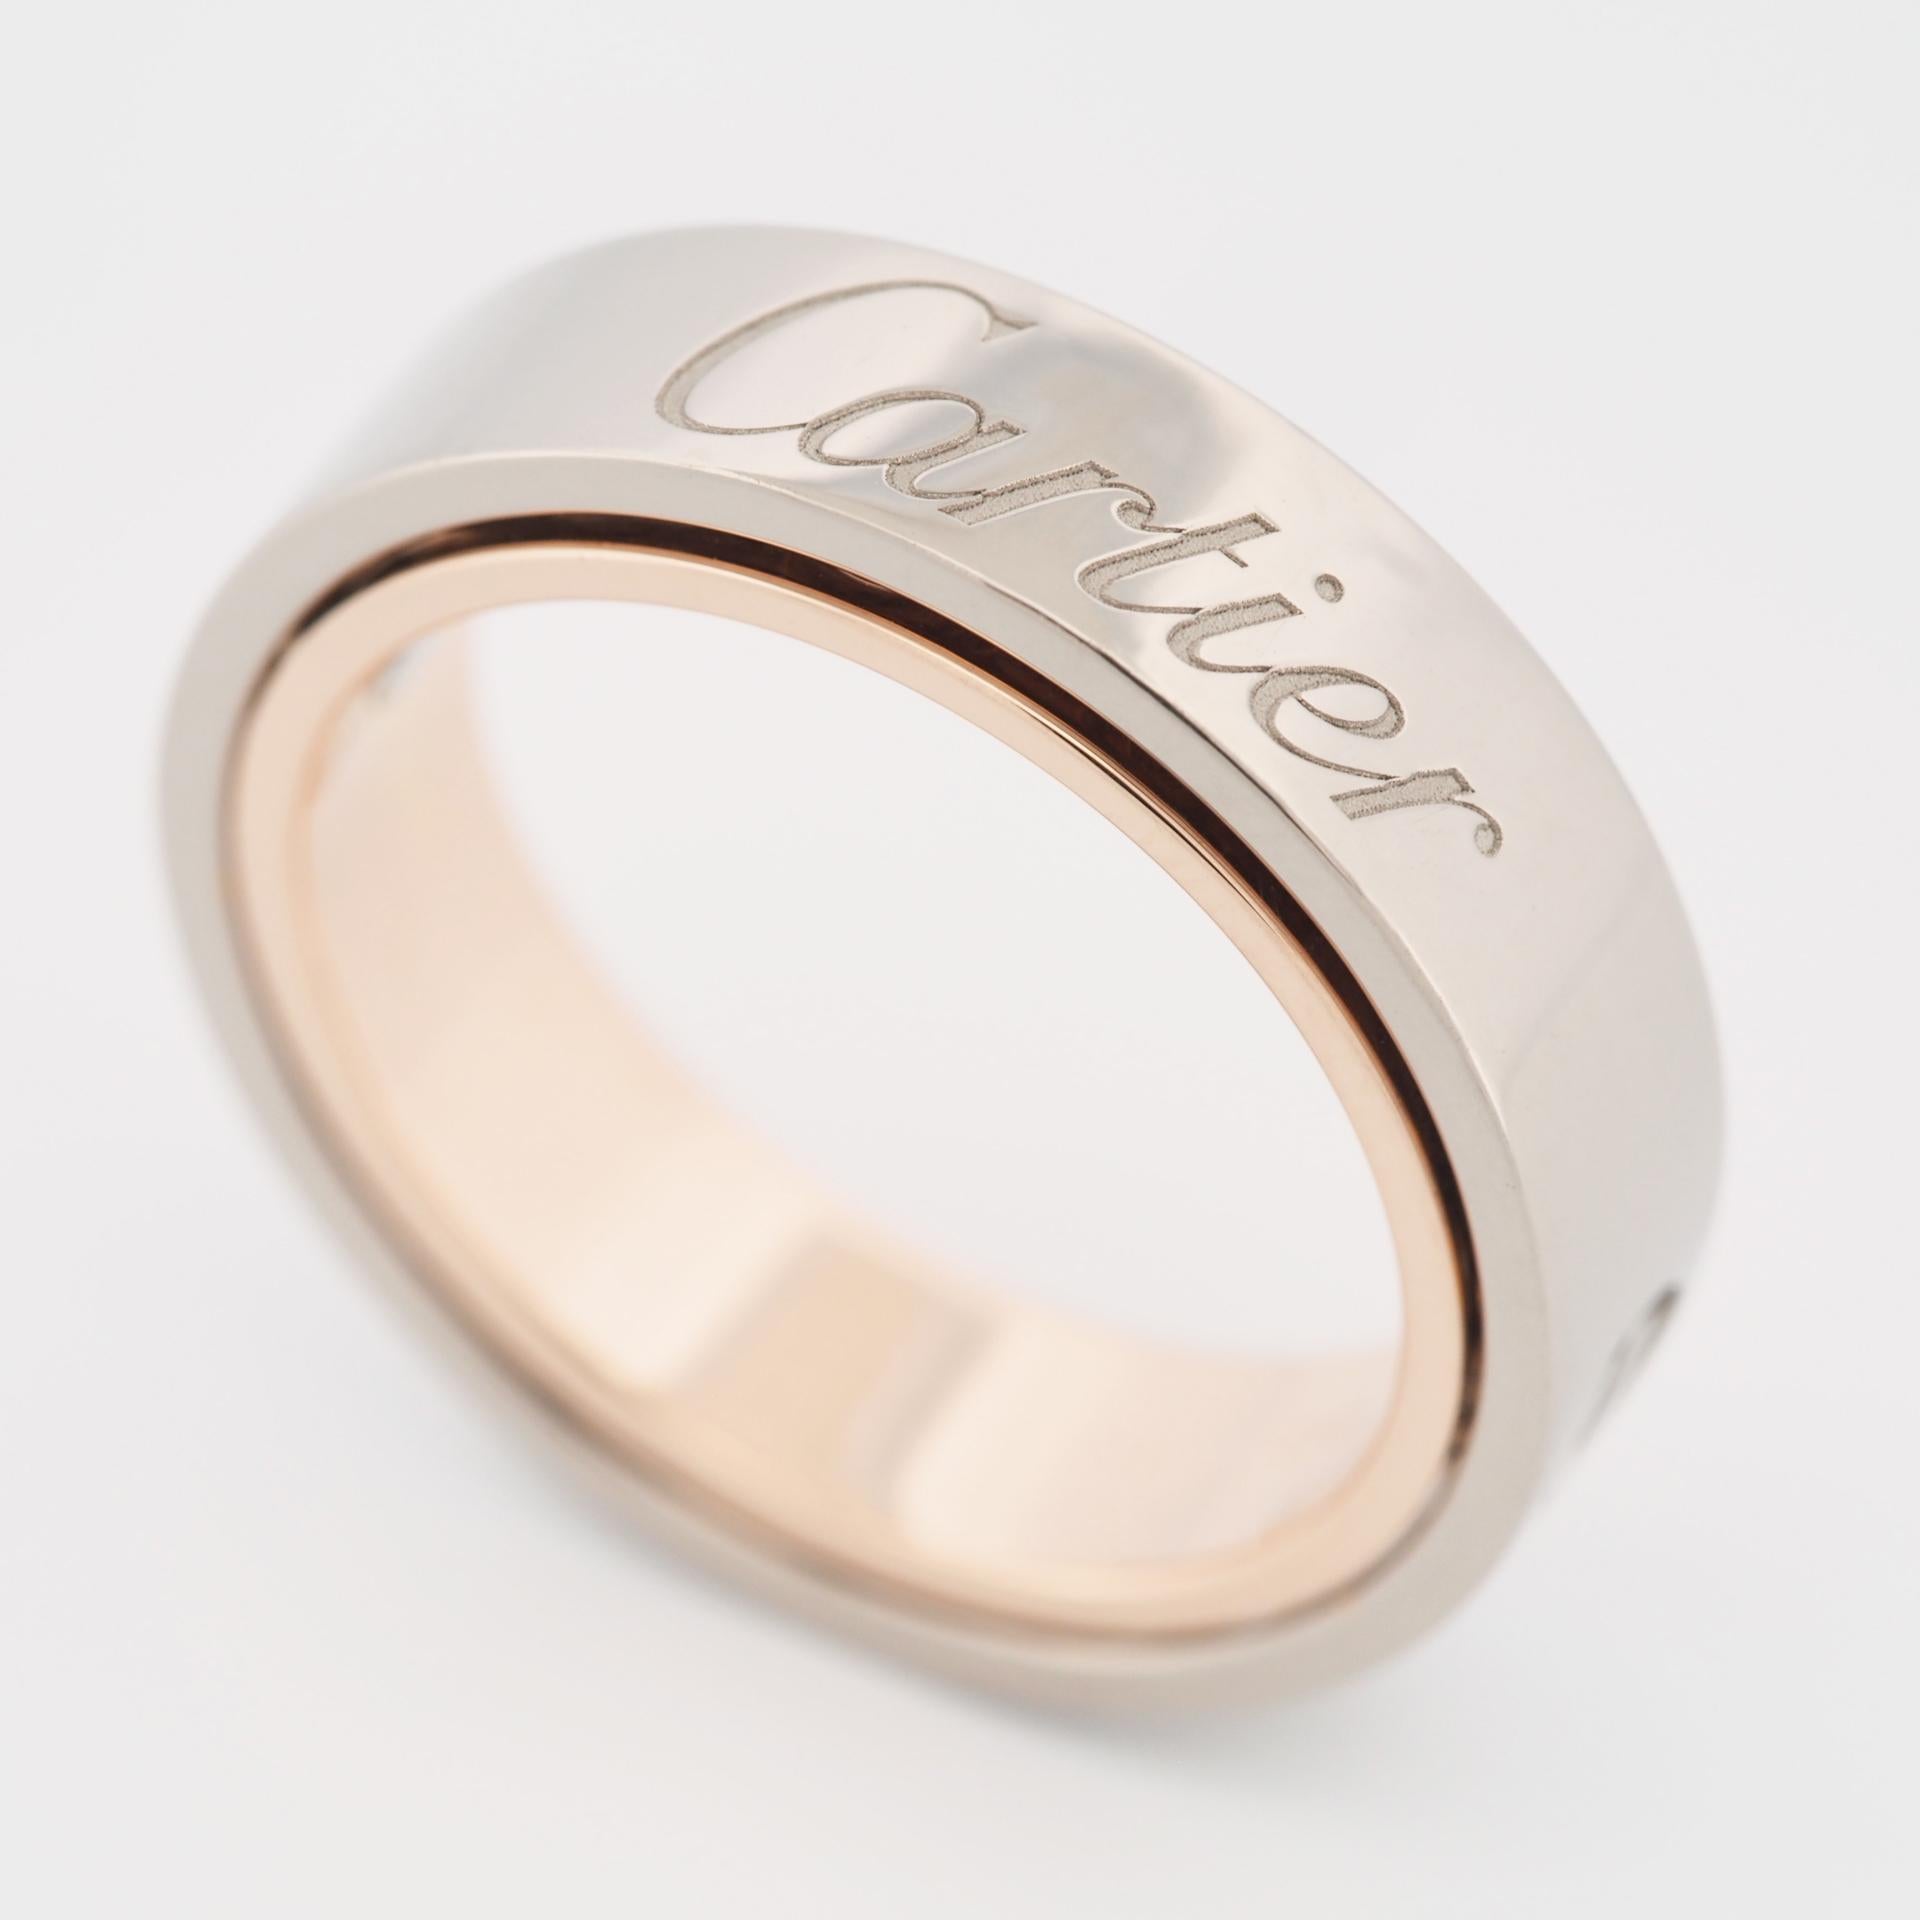 Cartier, bague Love Secret Ring en or rose et blanc 55, 2005, édition limitée 1